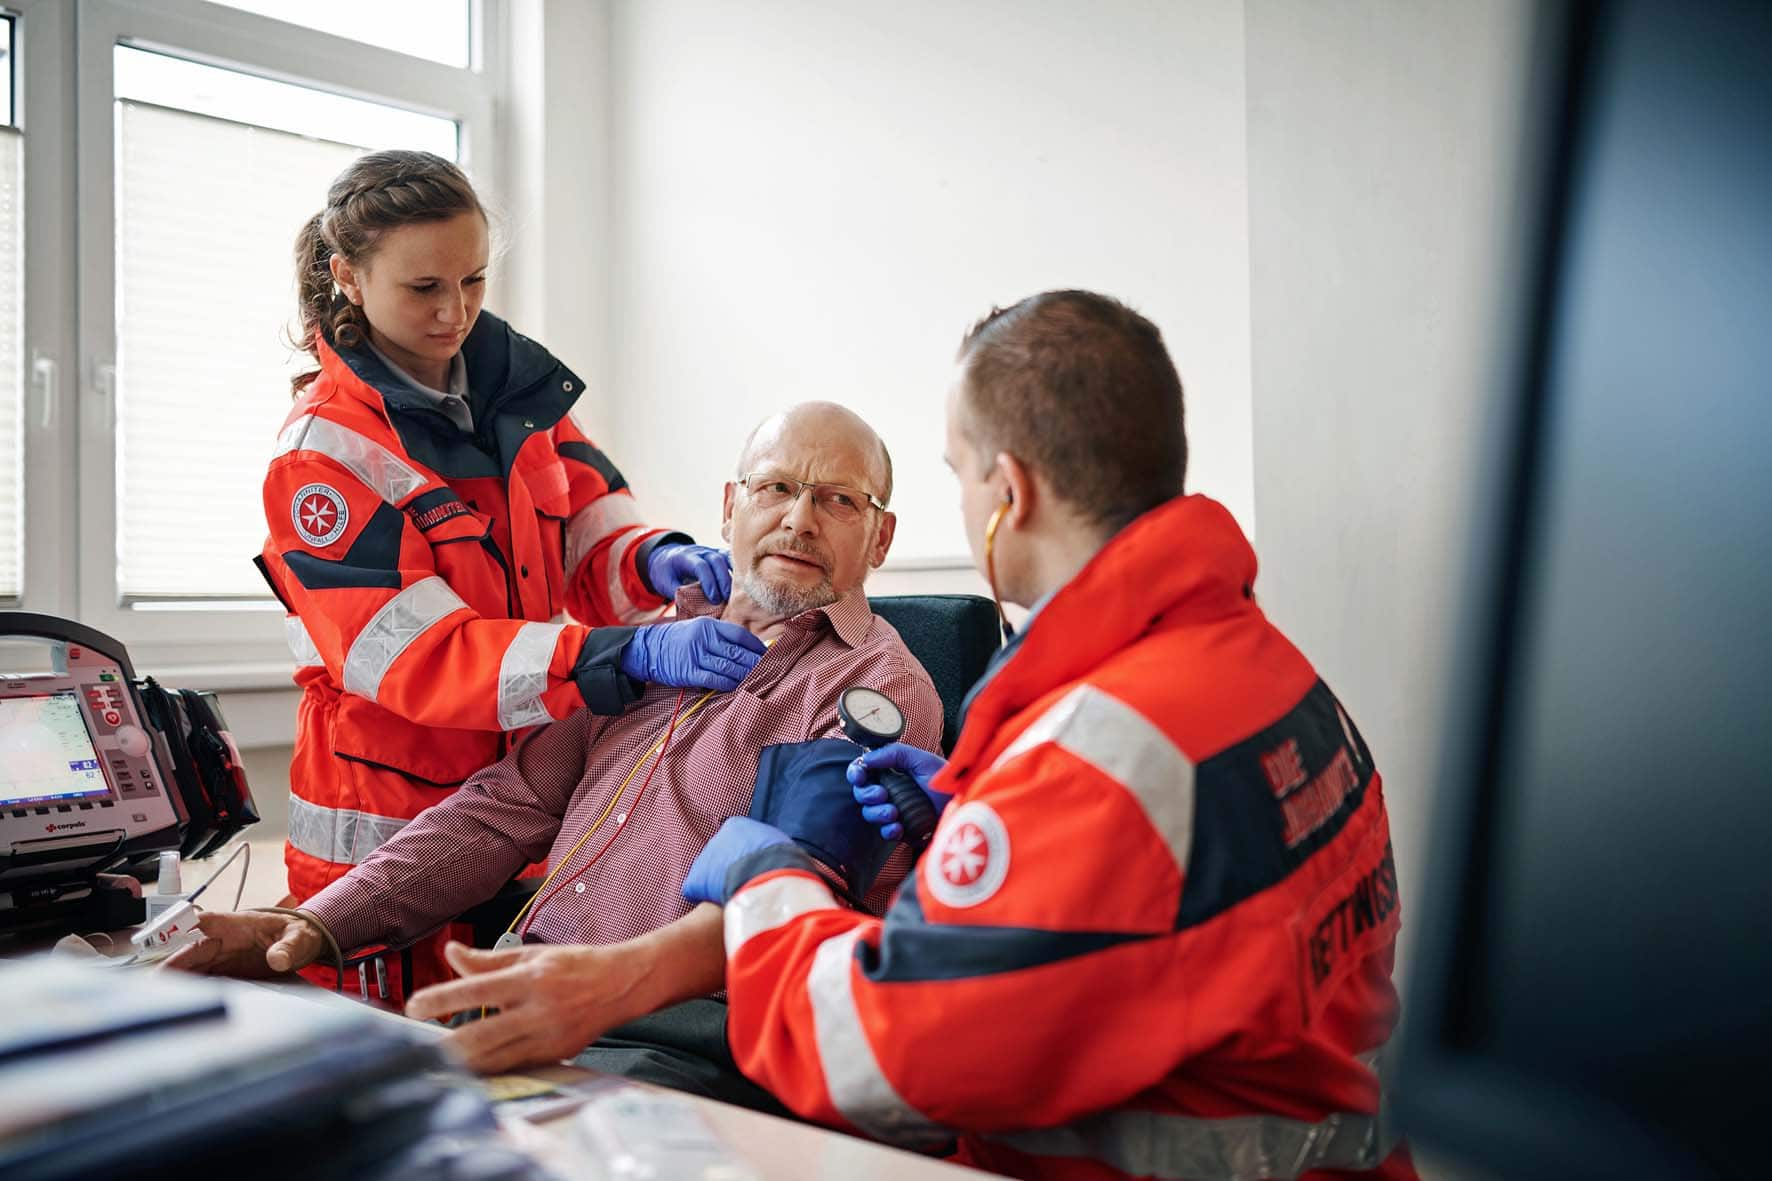 Rettungssanitäter: Johanniter starten mit neuer Ausbildung